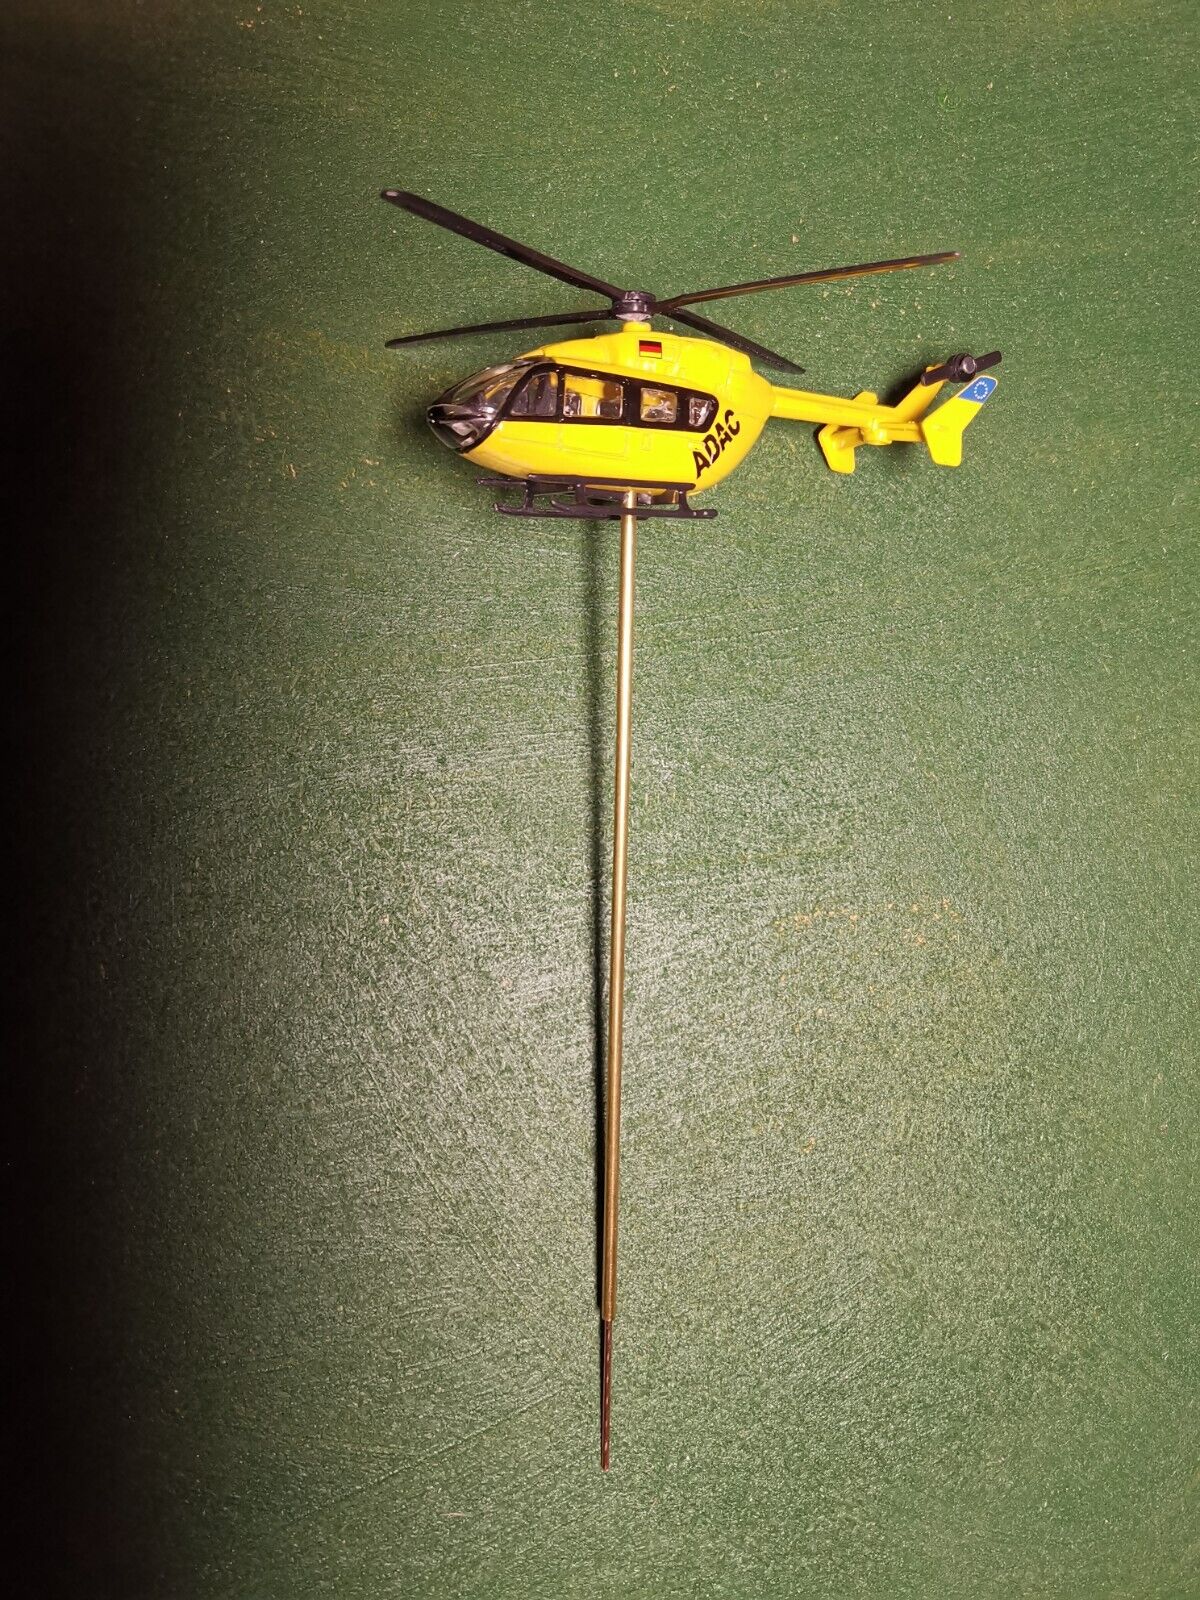 Hubschrauber 1:87 motorisiert | schwebender Helicopter mit Unterflurantrieb